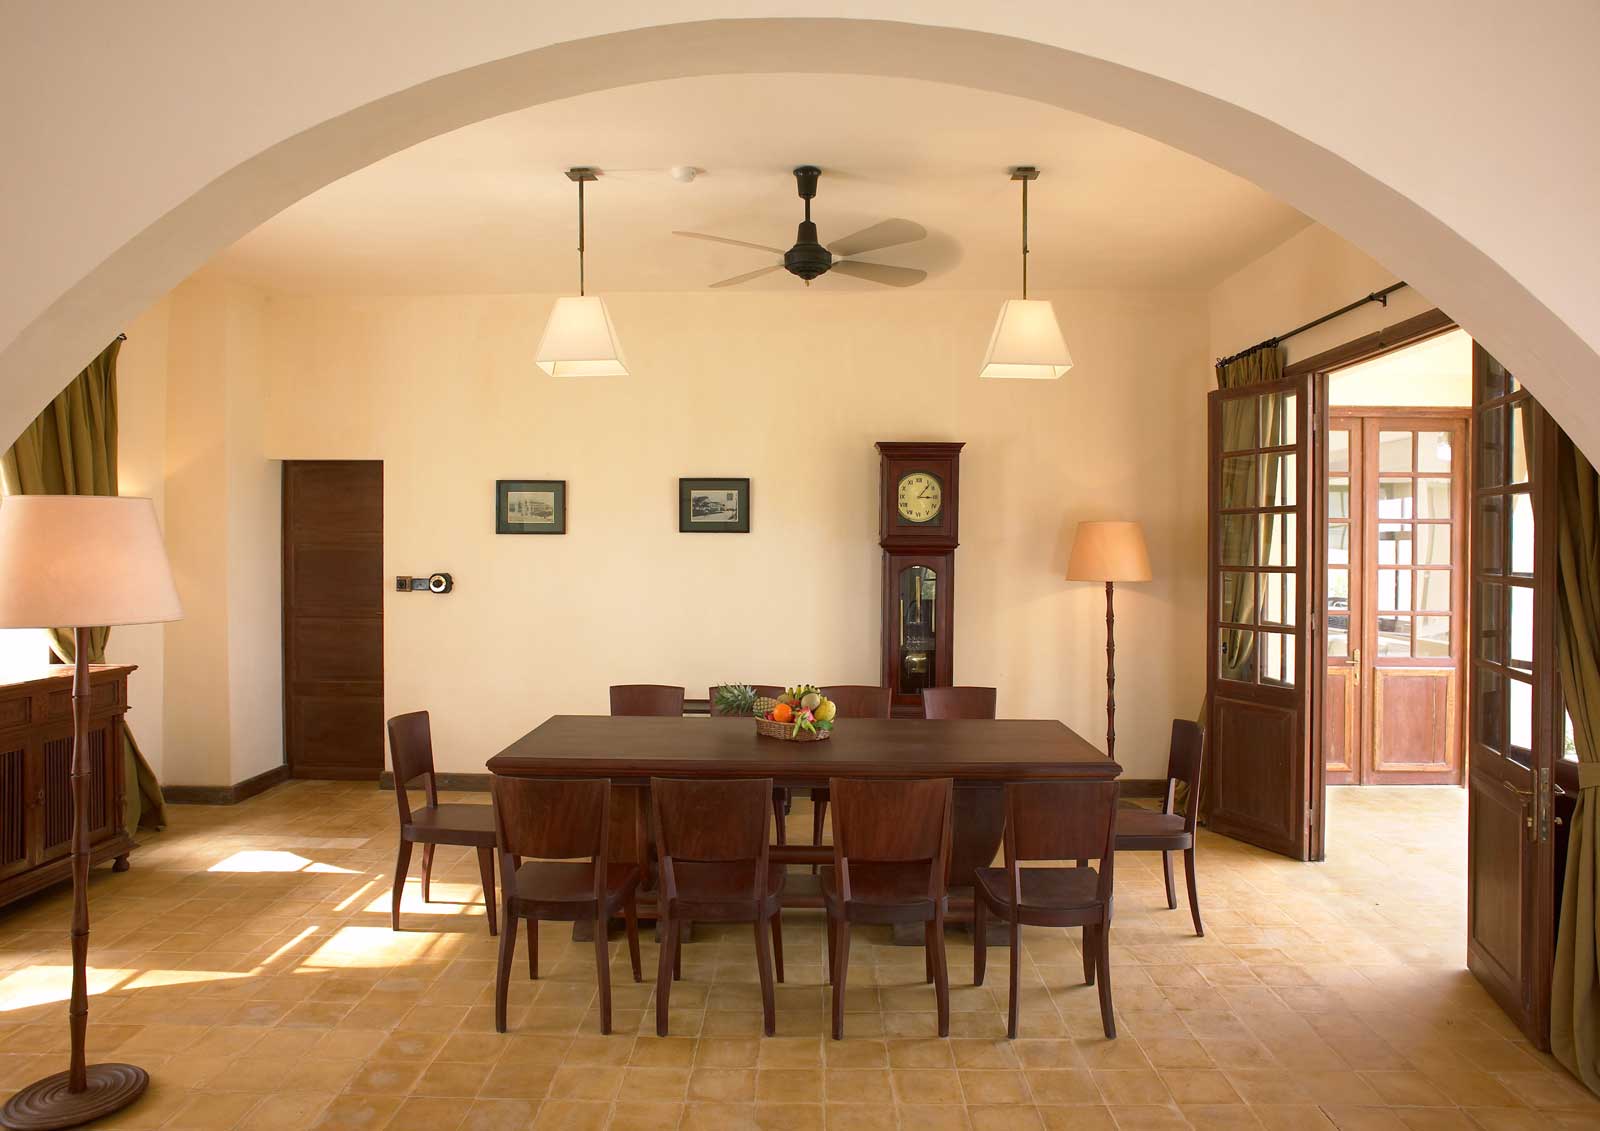 65 Desain Interior Ruang Makan Cantik Sederhana Rumahku Unik